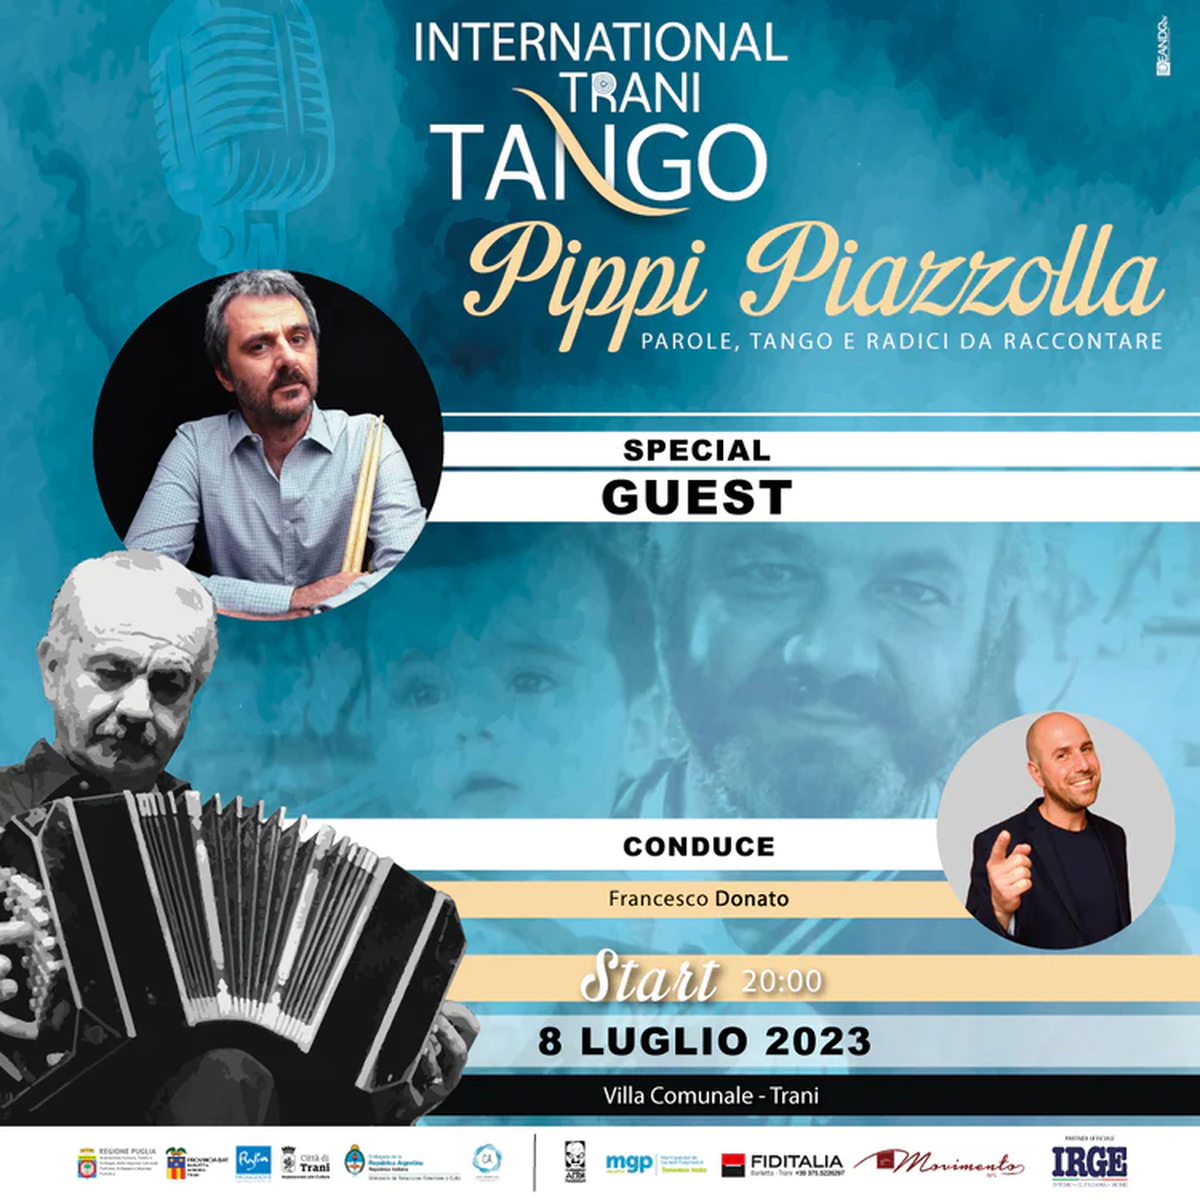 Italia: Il Trani Tango Festival festeggia un decennio e accoglie Bibi Piazzolla, che racconterà la storia della sua famiglia e suonerà la musica del nonno Aster.